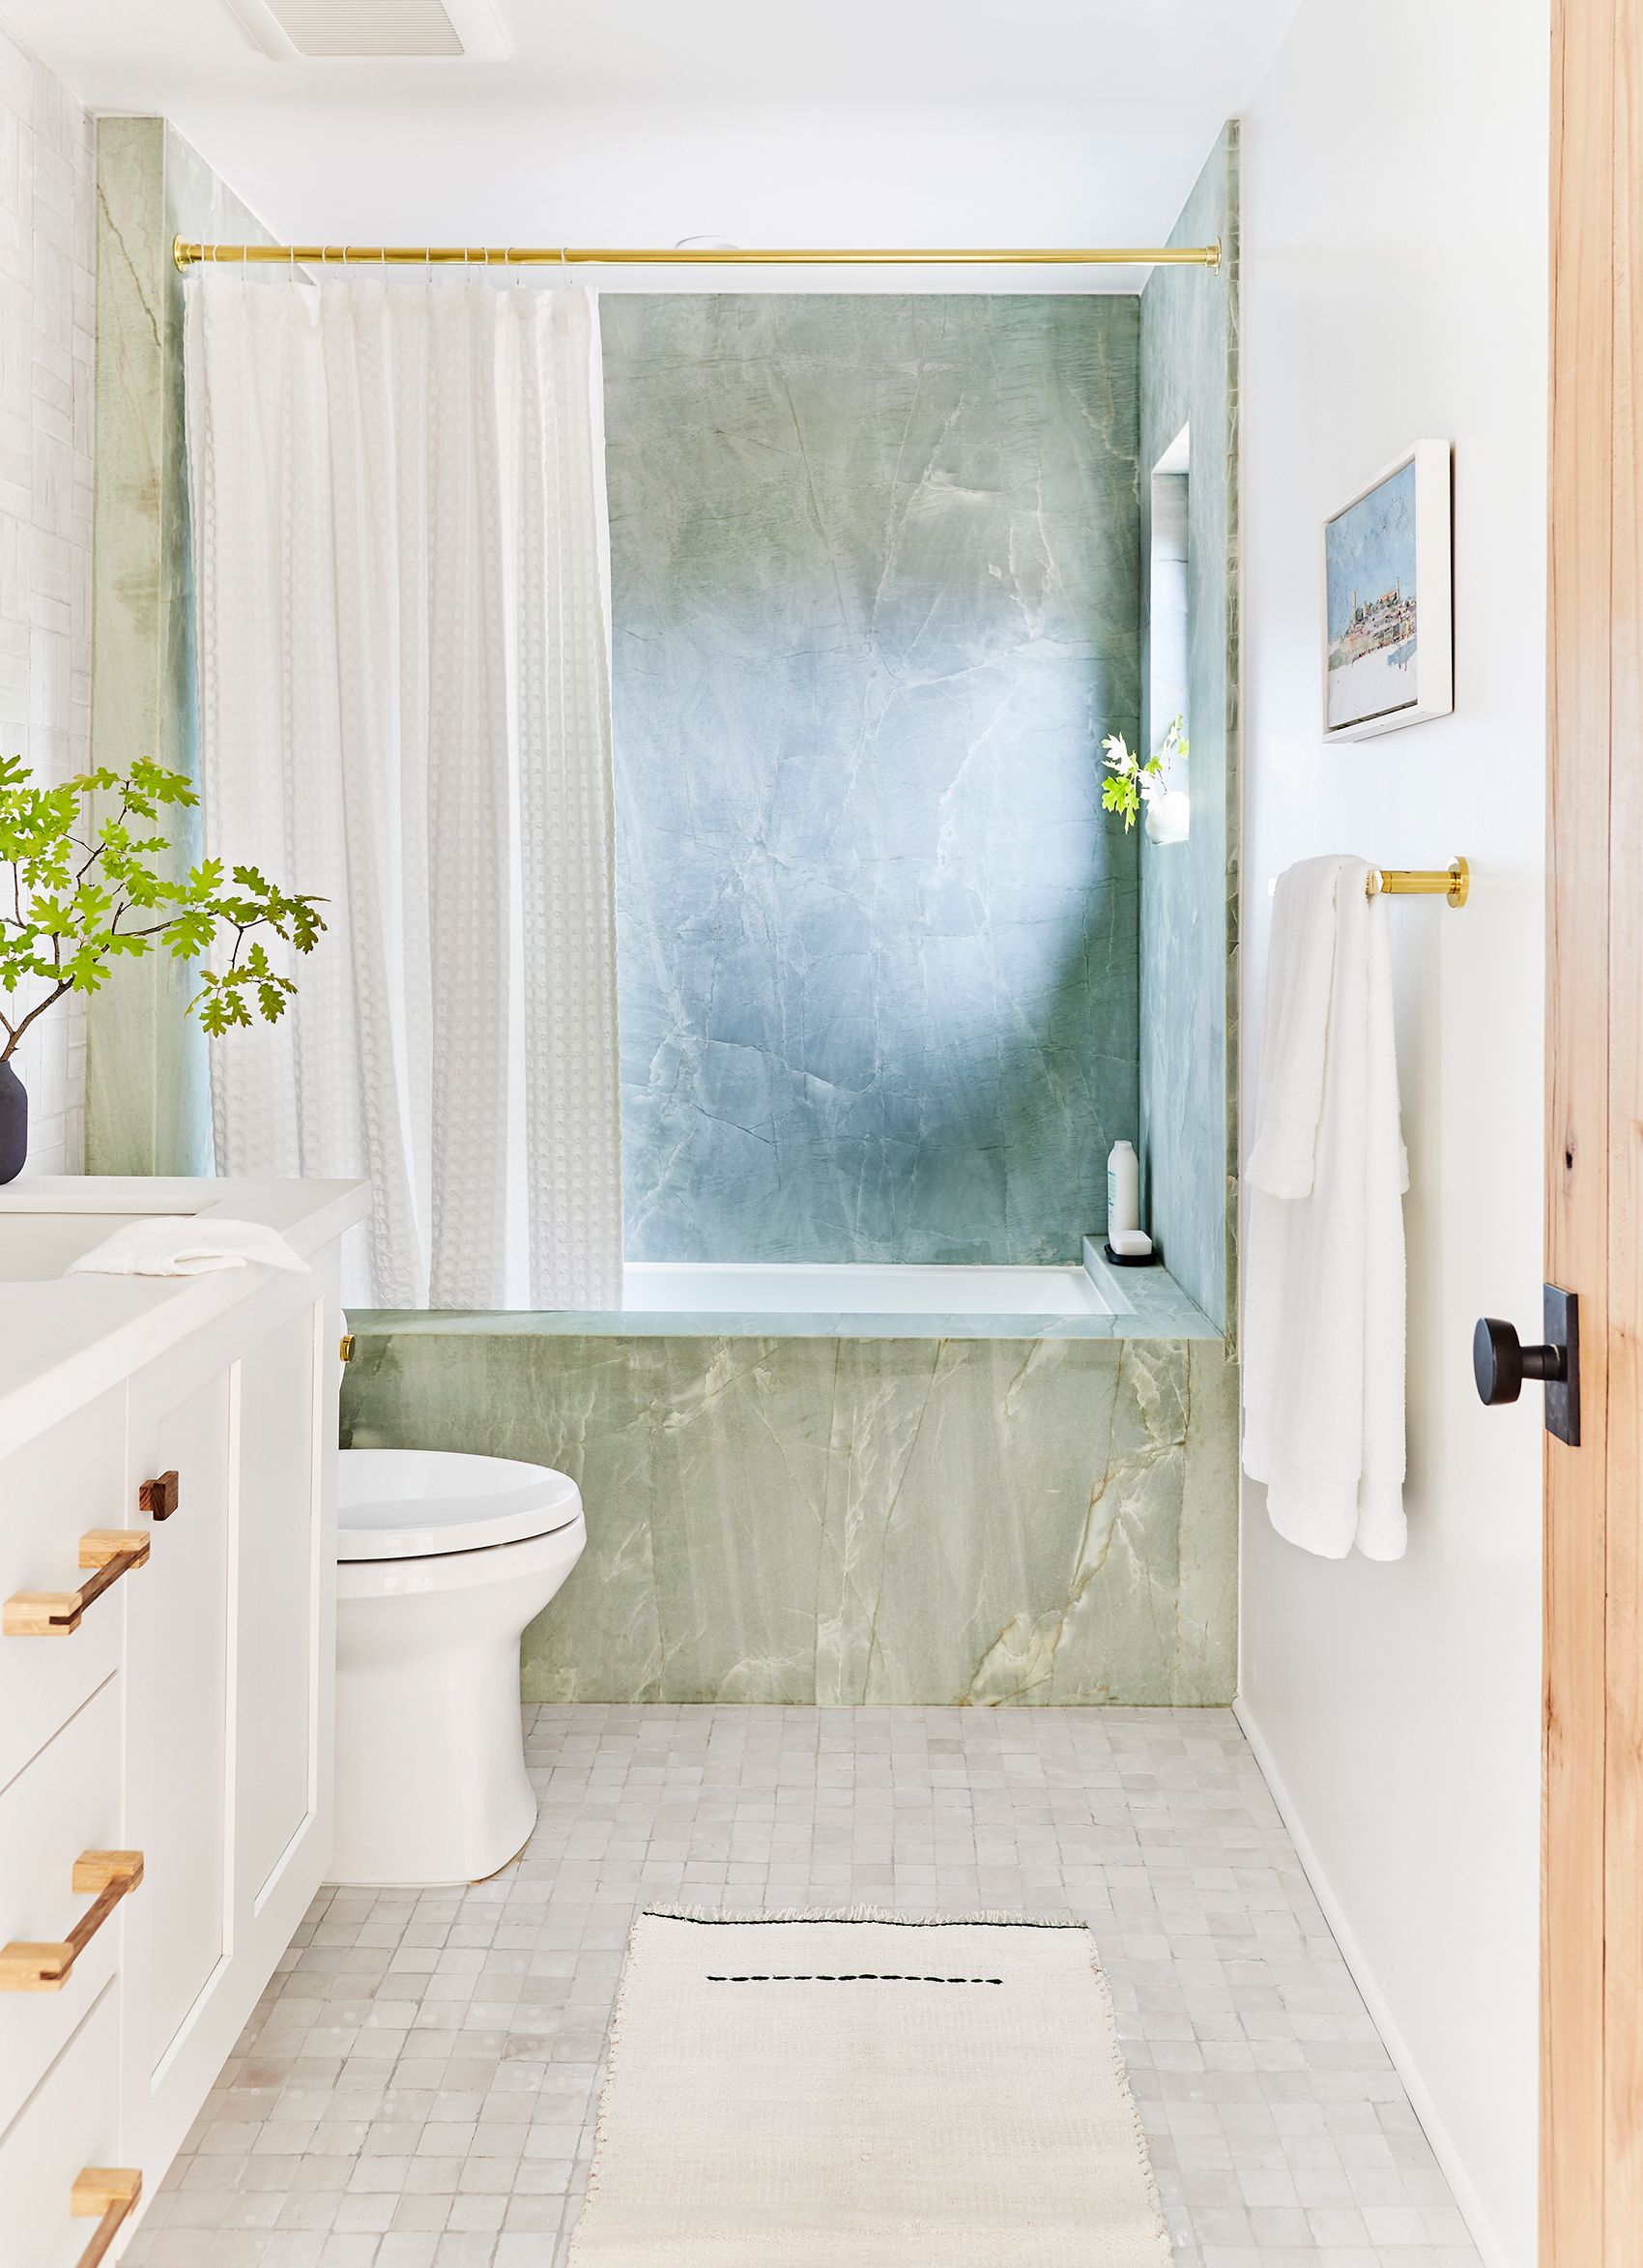 48 Bathroom Tile Ideas Bath, Floor Tile Patterns For Small Bathrooms